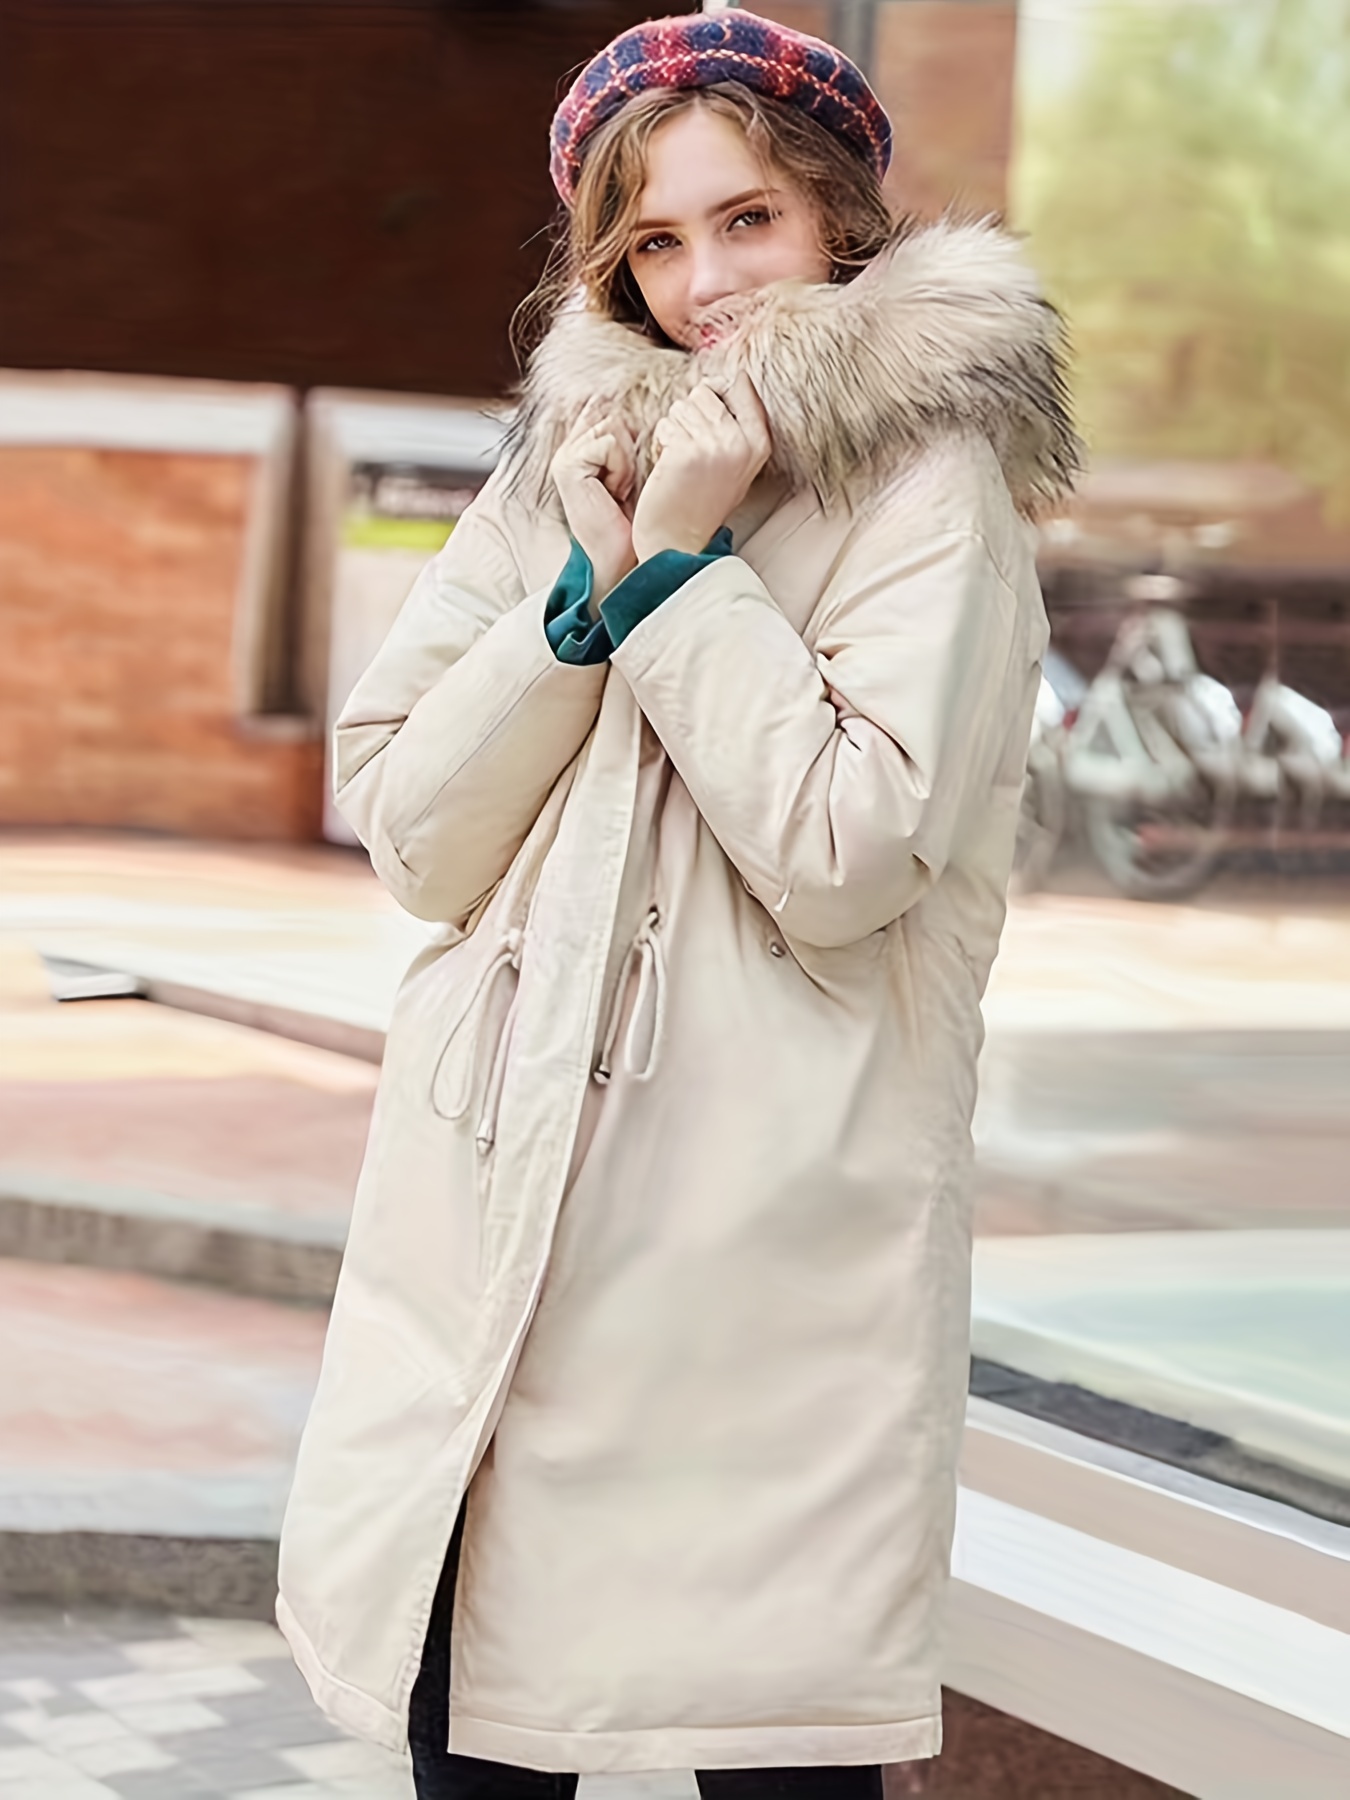 Manteau hiver pour garçon avec capuche fourrure et cordon ceinture